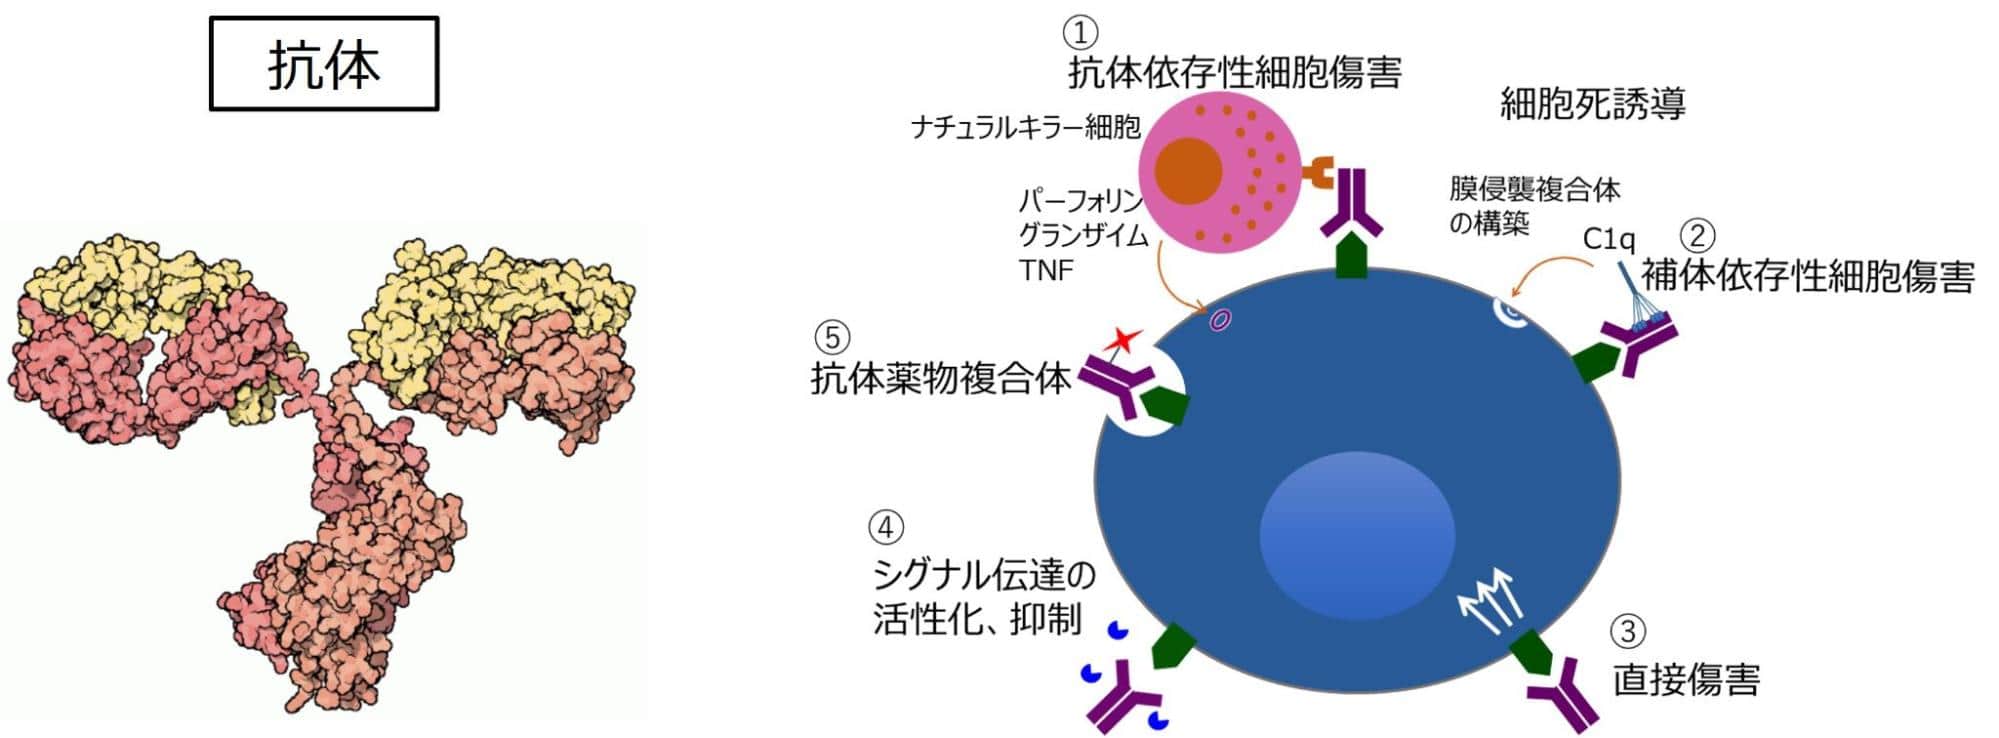 抗体は、抗原に特異的に結合し、排除する役割を表した図